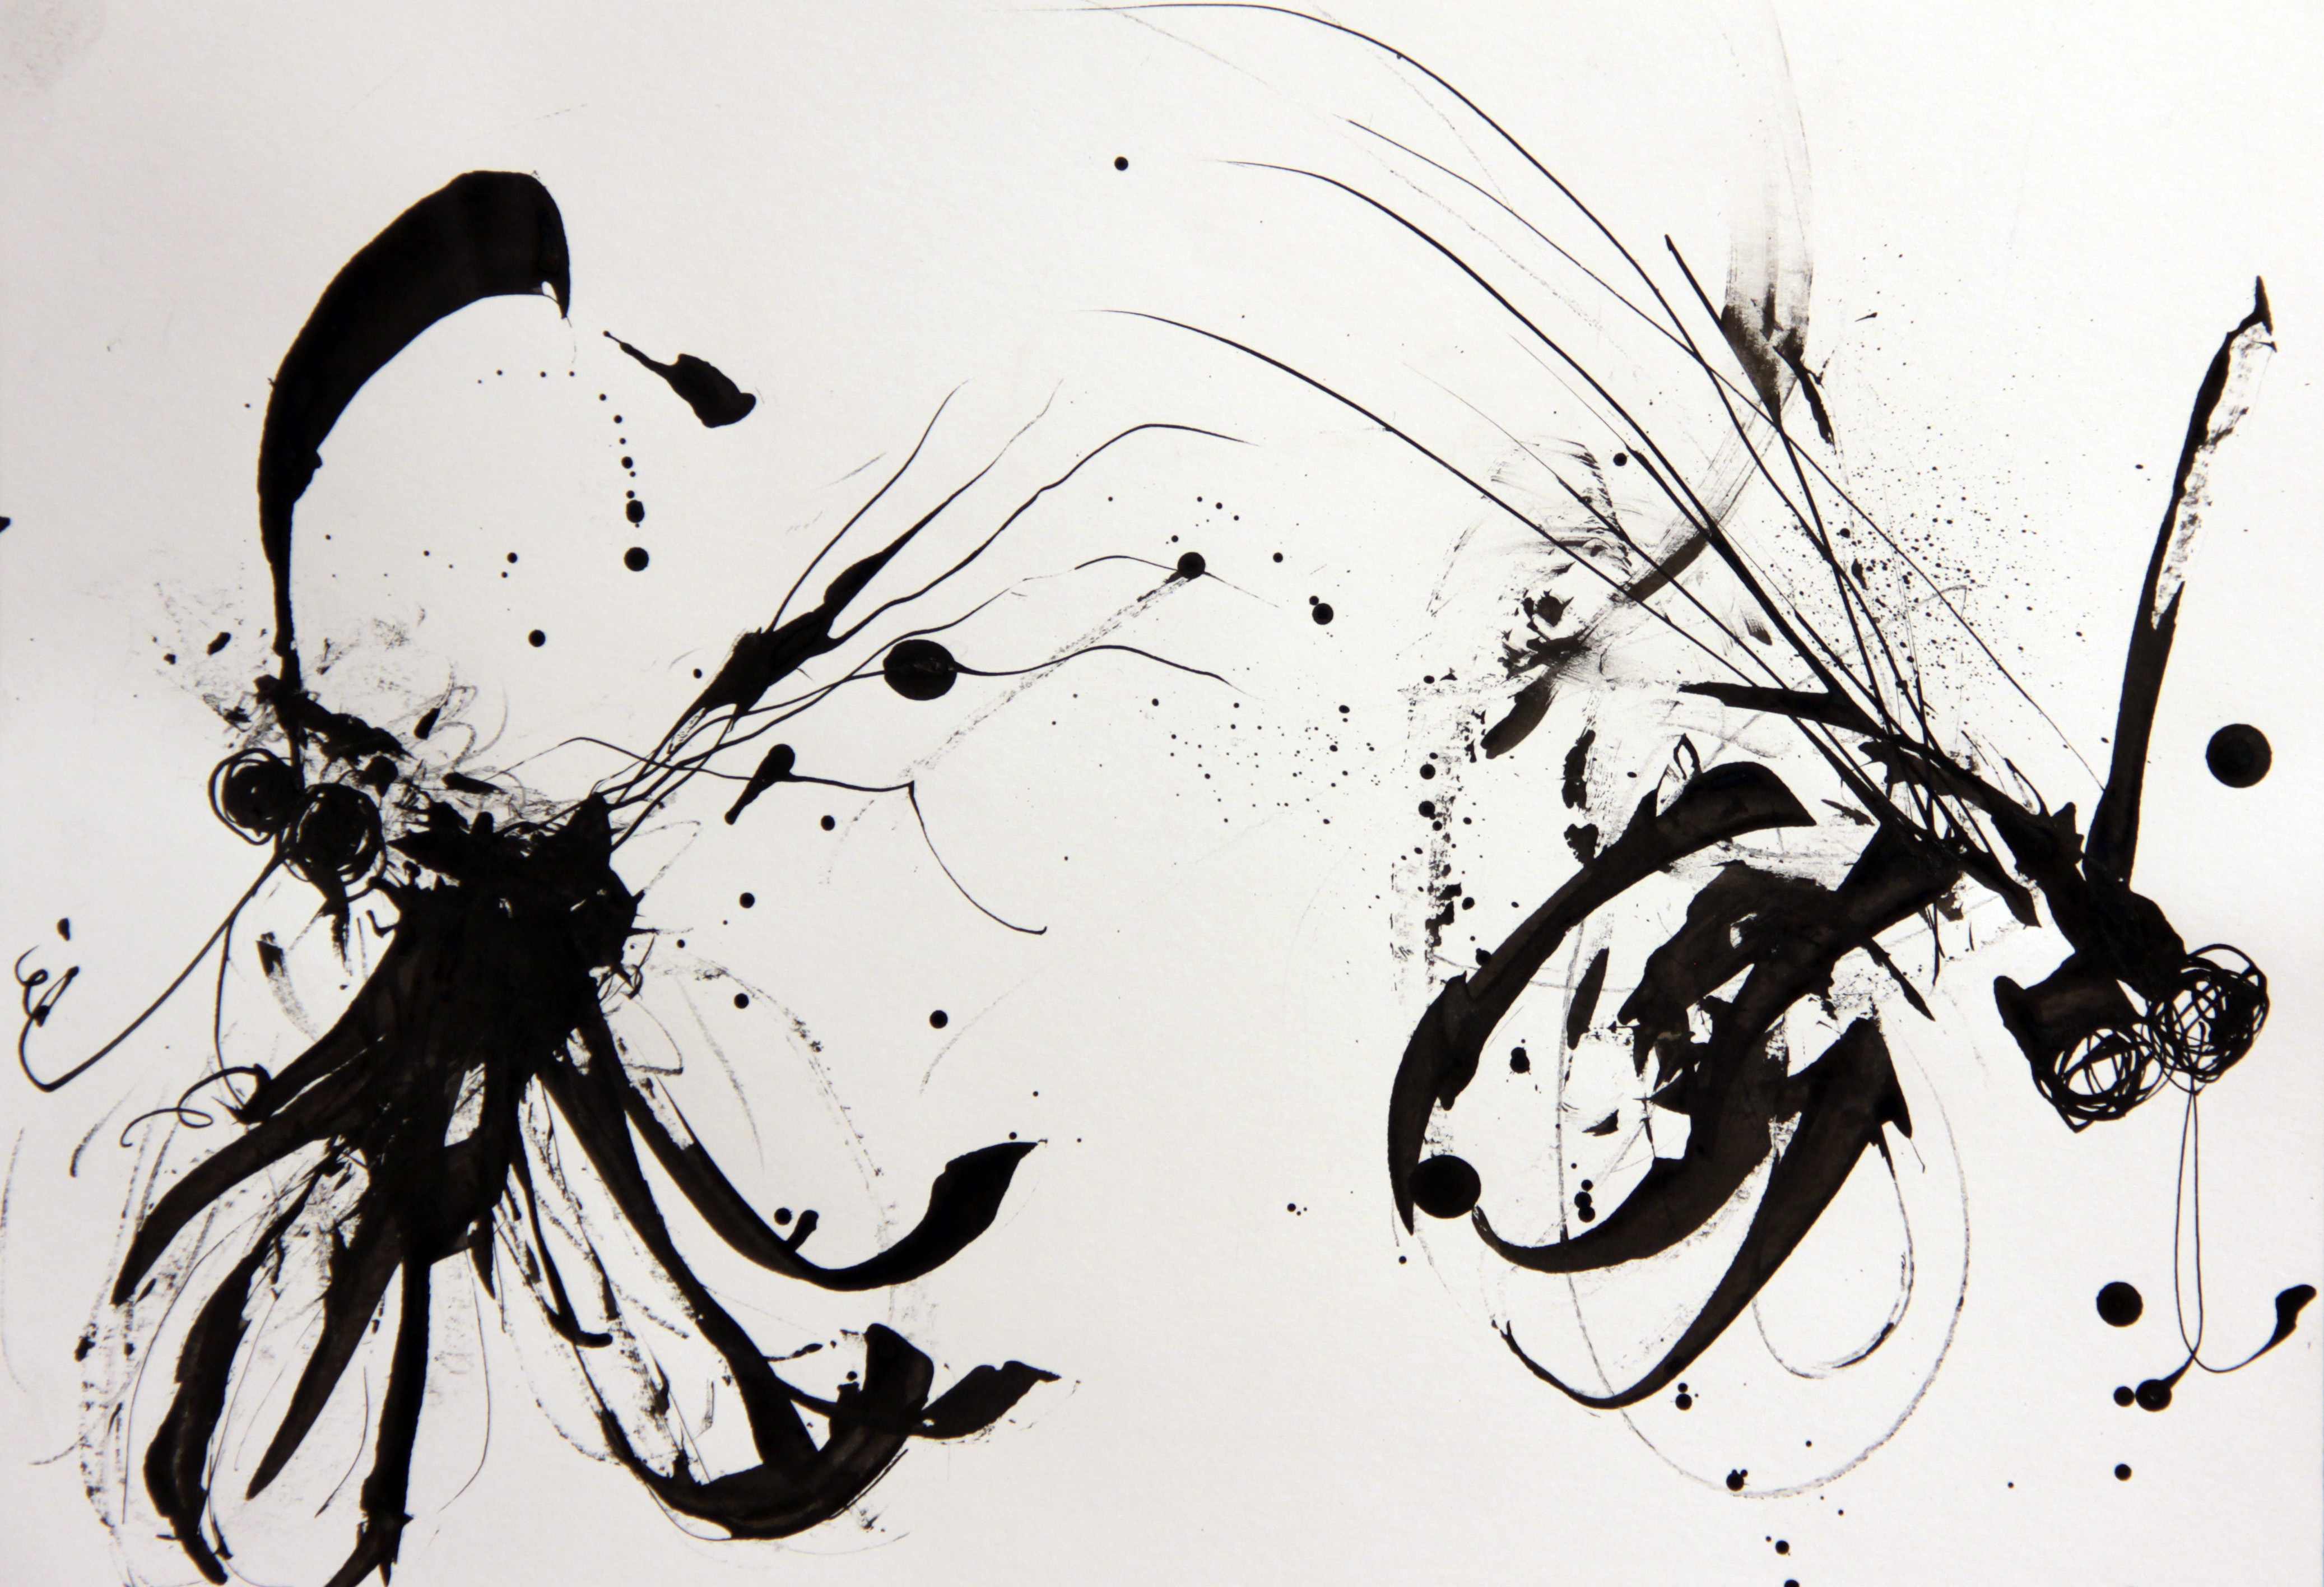 Splatter ink sketch of fly